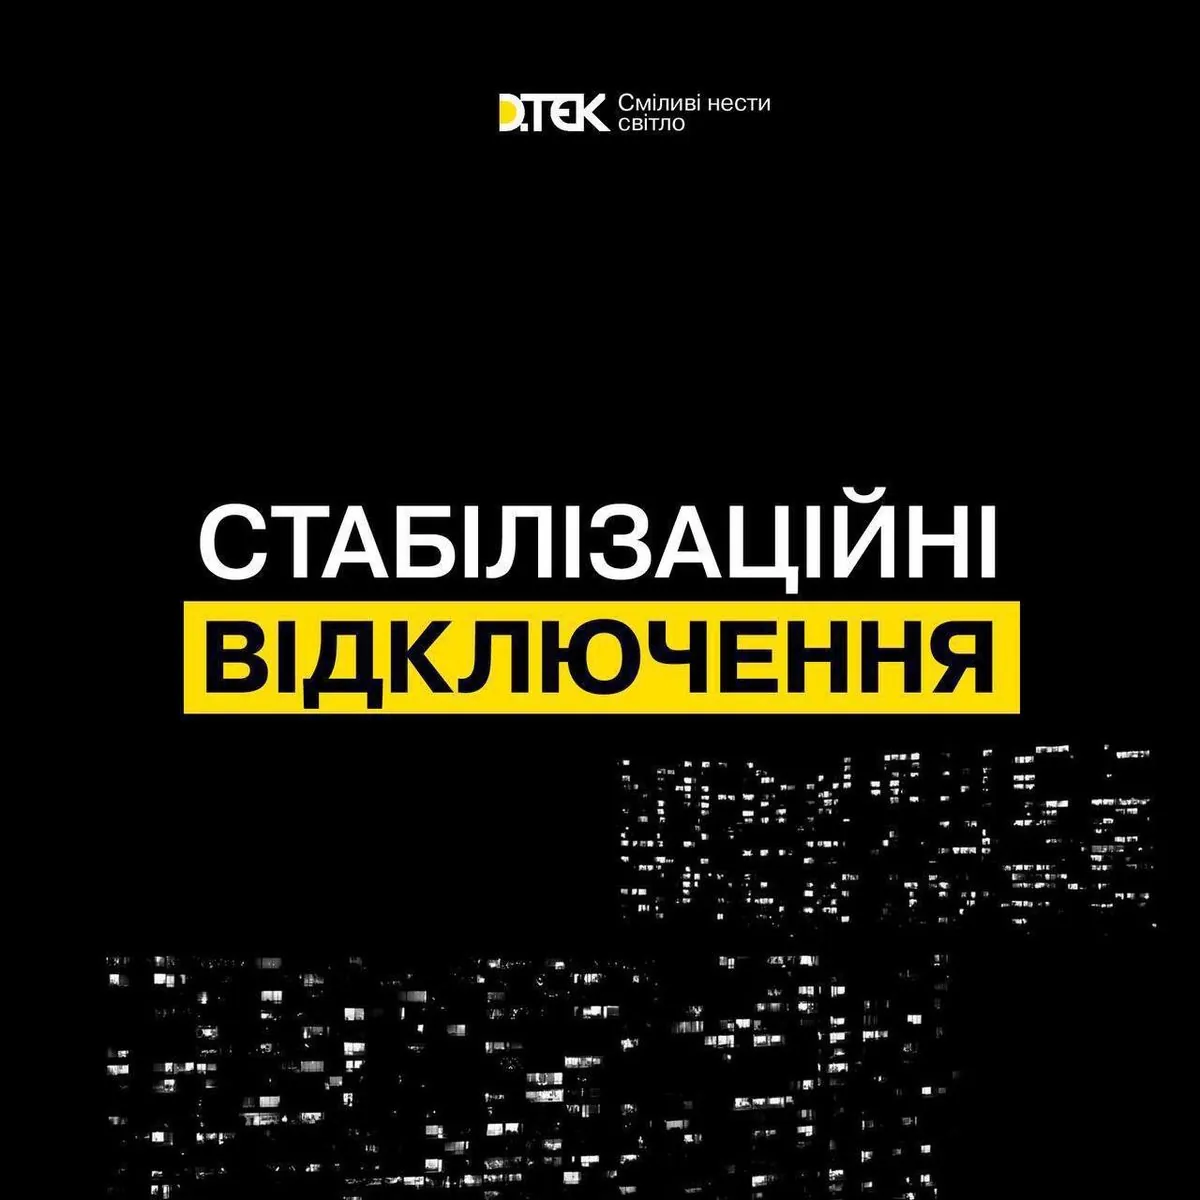 Завтра в Україні графіки відключень будуть діяти впродовж доби: коли світла може не бути найдовше